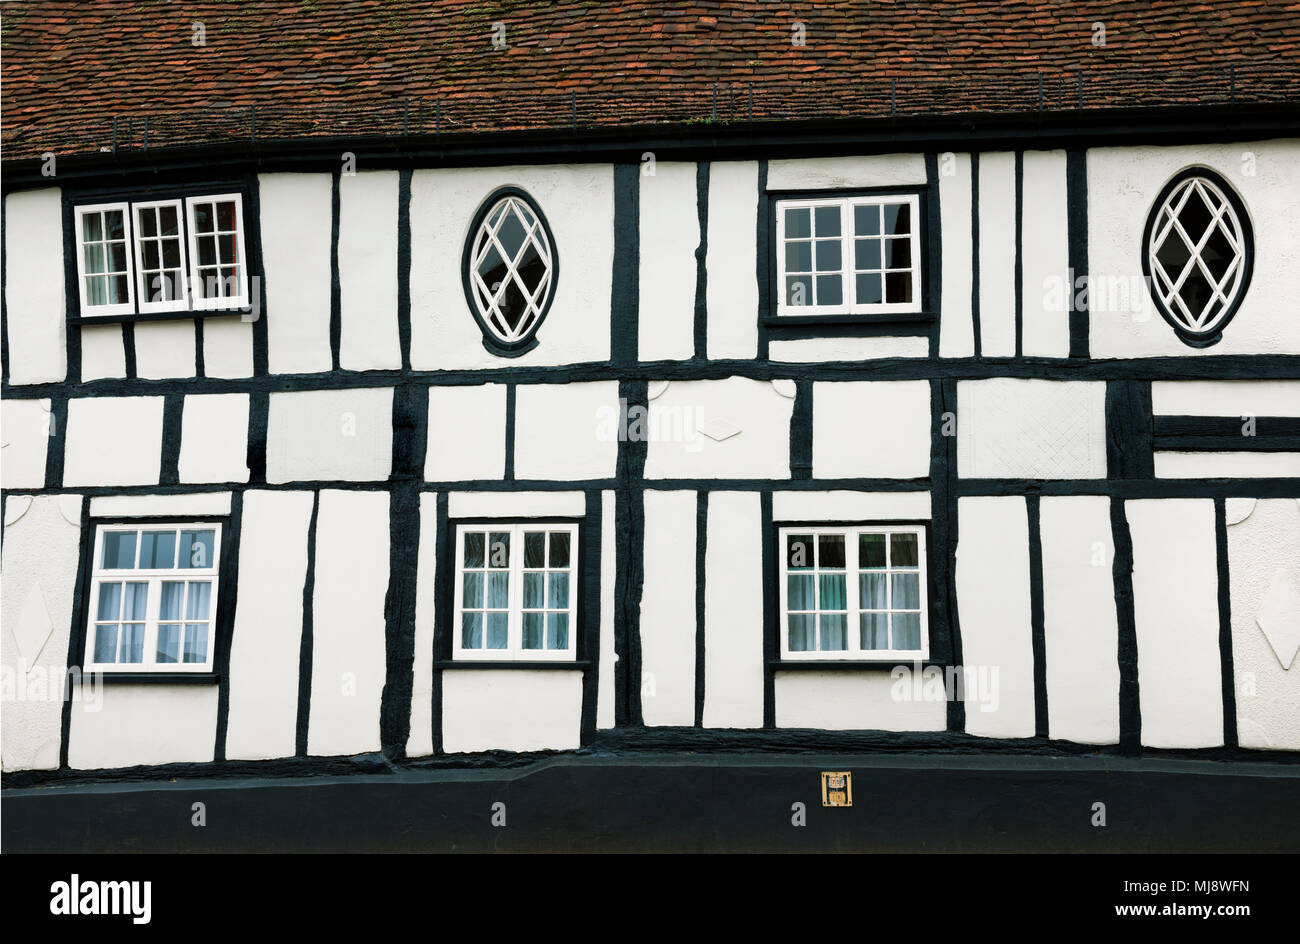 Schwarze und weiße Fachwerkhaus, St Michael's Street, St Alban's, Hertfordshire, England, UK. Fachwerkhaus aus dem 17. Jahrhundert mit Änderungen. Stockfoto